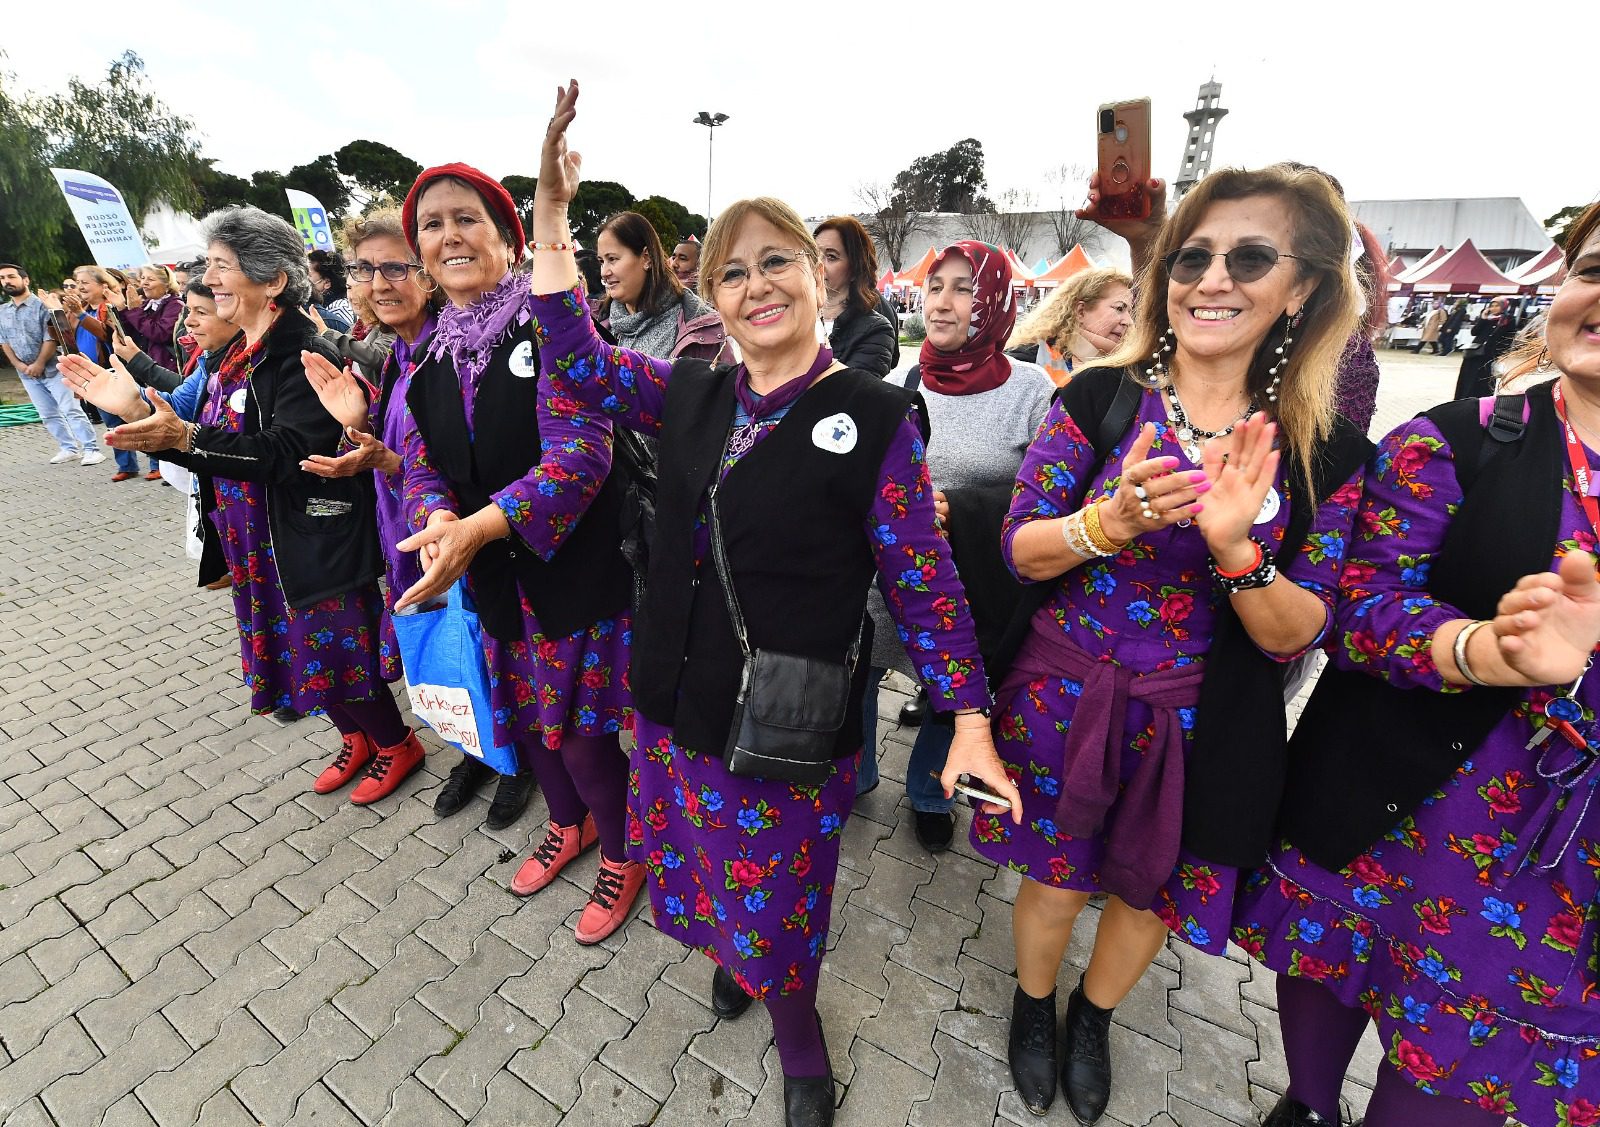 İzmir’de festival havasında Kadınlar Günü kutlaması